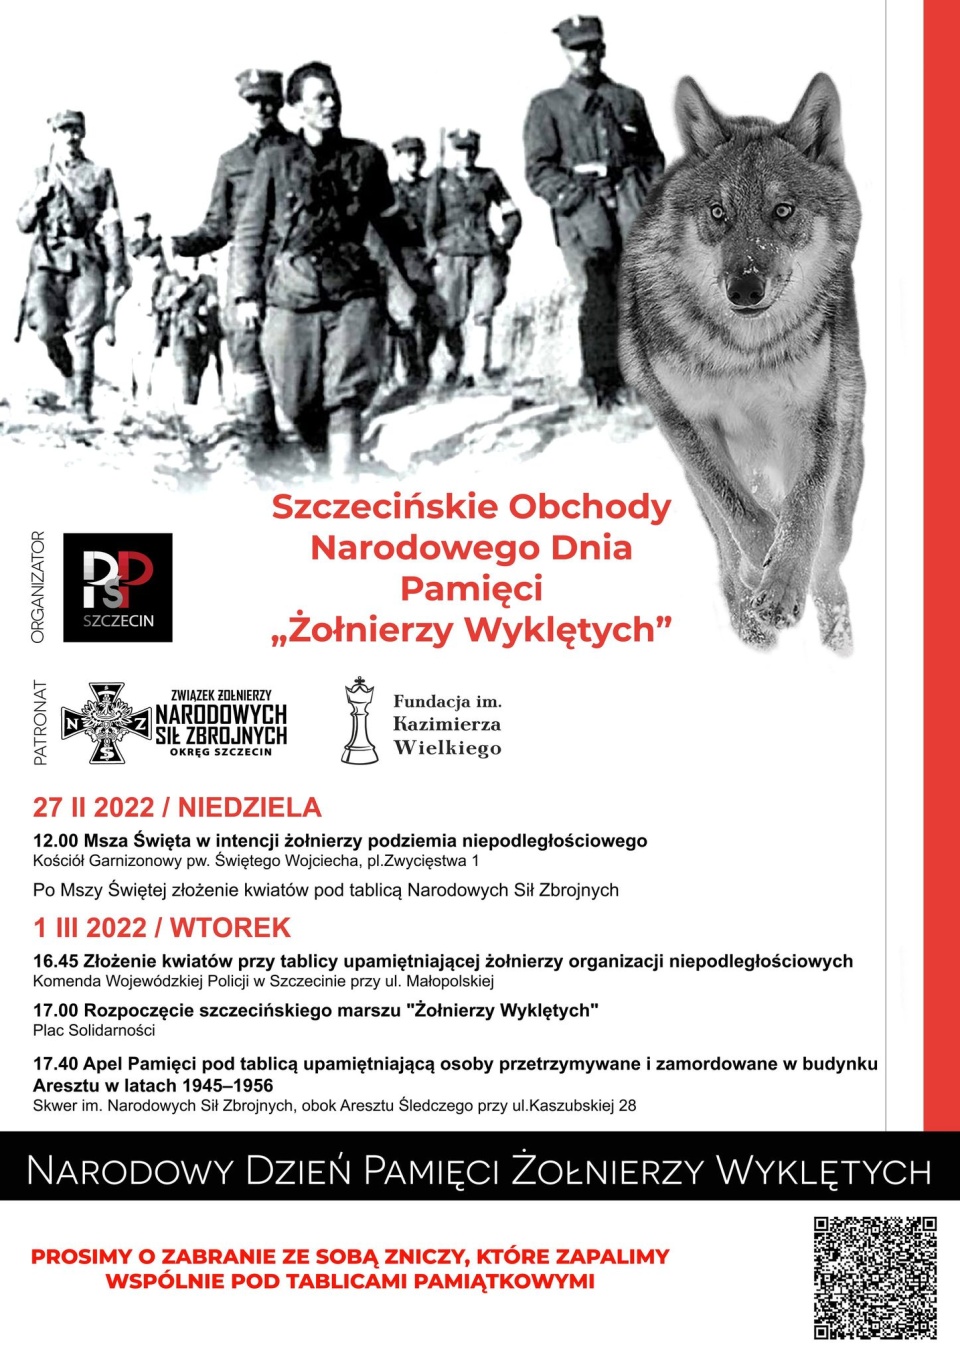 Bieg odbywa się z okazji Narodowego Dnia Pamięci Żołnierzy Wyklętych, który jest obchodzony 1 marca. źródło: Zarządu Okręgu Szczecin ZŻNSZ